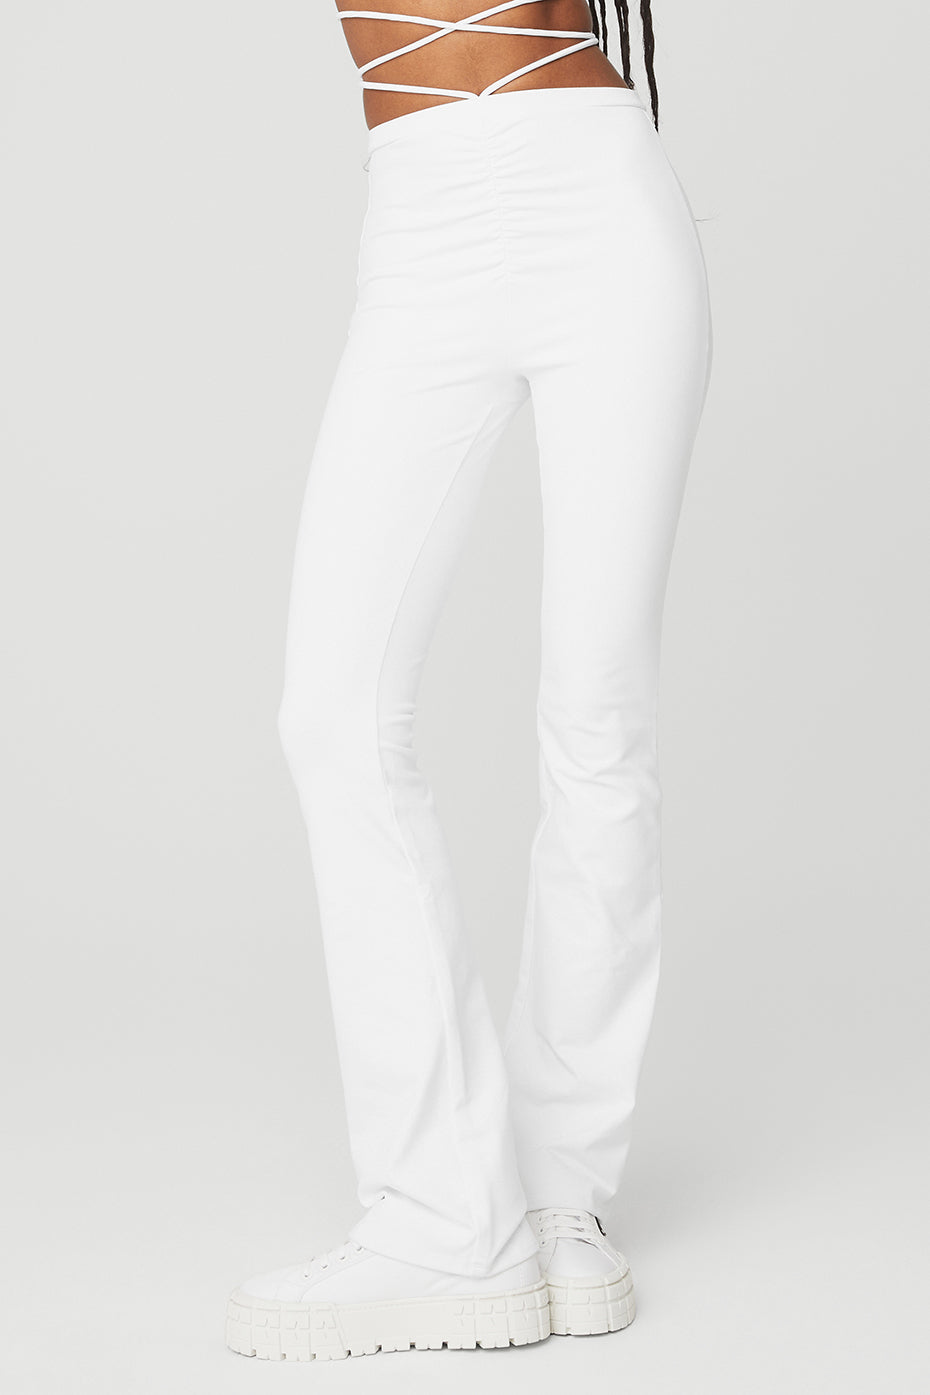 Alo Yoga Women's High-Waist Airbrush Legging  White leggings outfit, White  workout leggings, Fashion jackson